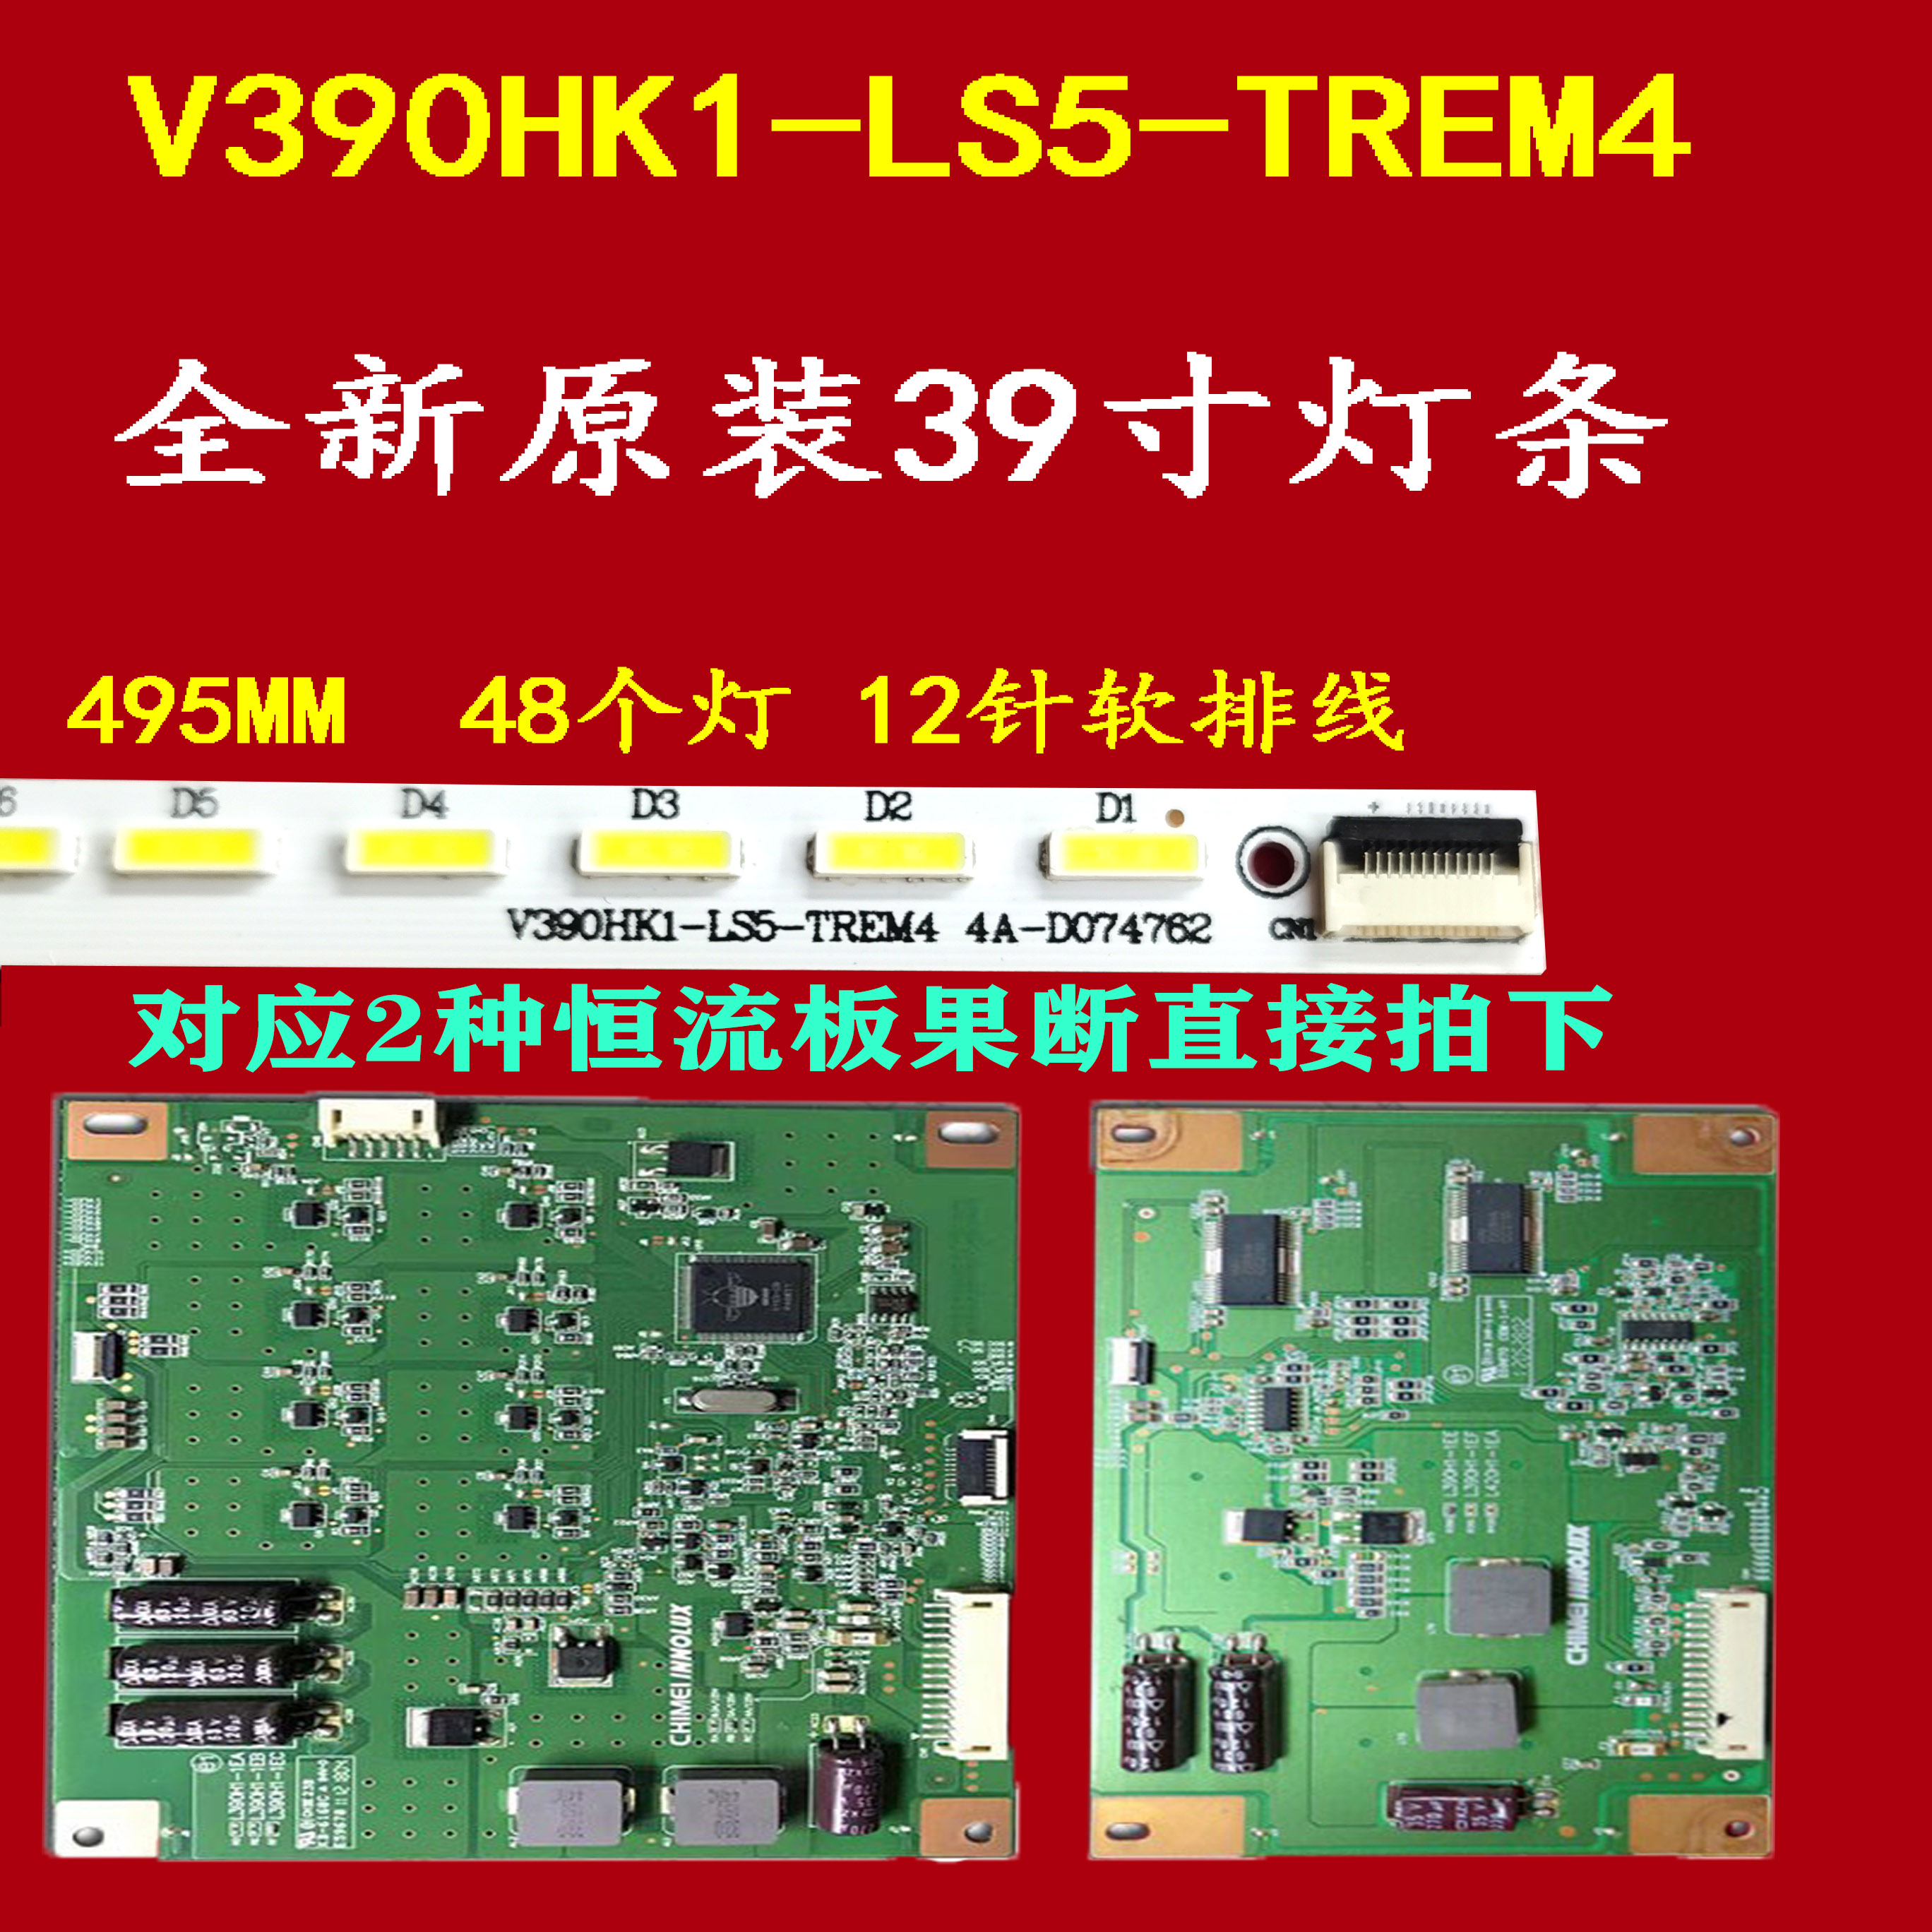 适用 海尔LE39A700K背光灯条 配屏V390HK1-LS5-TREM4 ex1铝 电子元器件市场 显示屏/LCD液晶屏/LED屏/TFT屏 原图主图